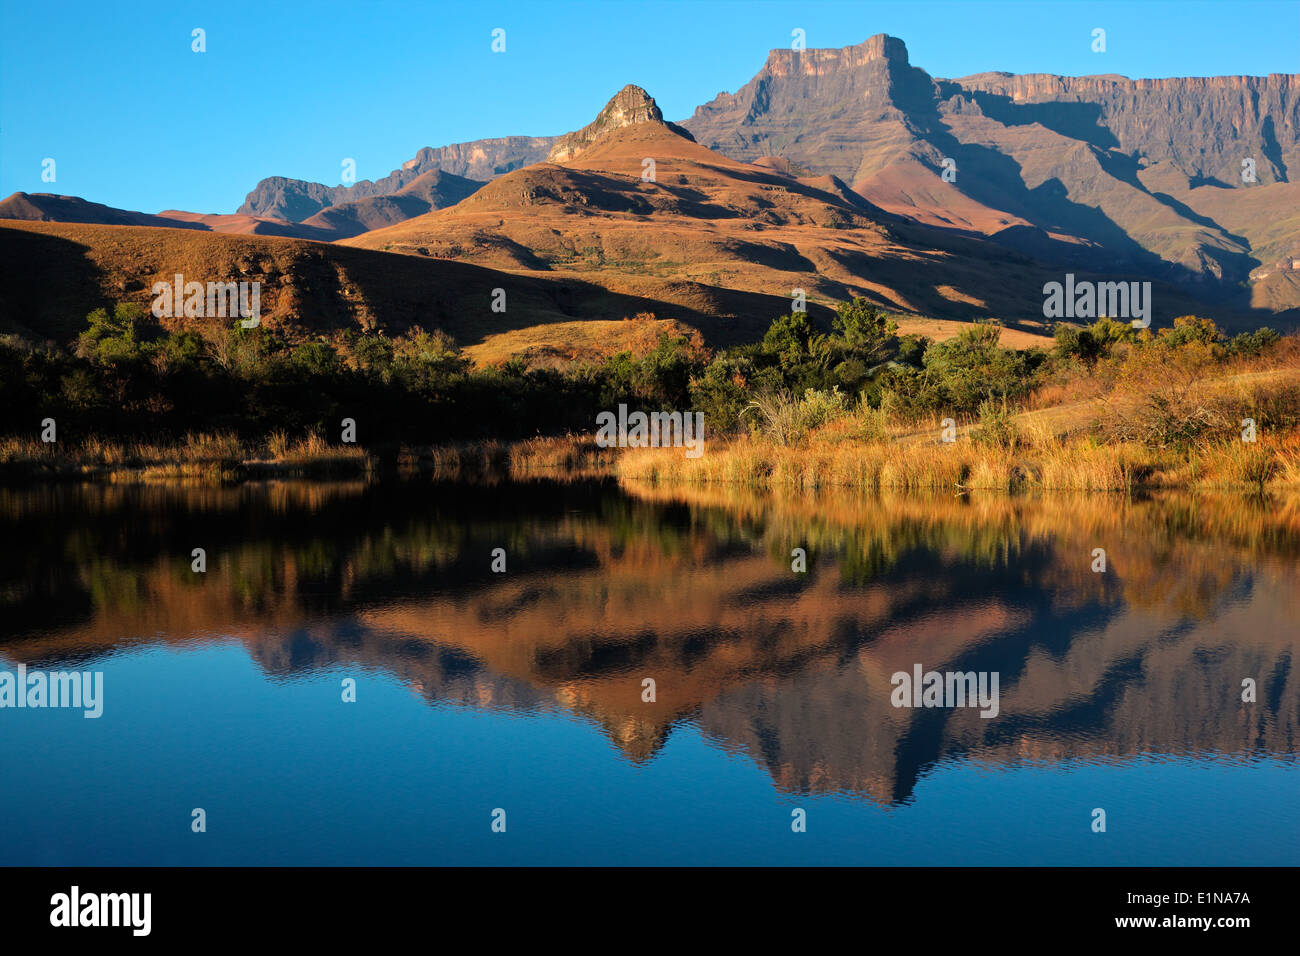 Les montagnes avec réflexion symétrique dans l'eau, Parc national royal Natal, Afrique du Sud Banque D'Images